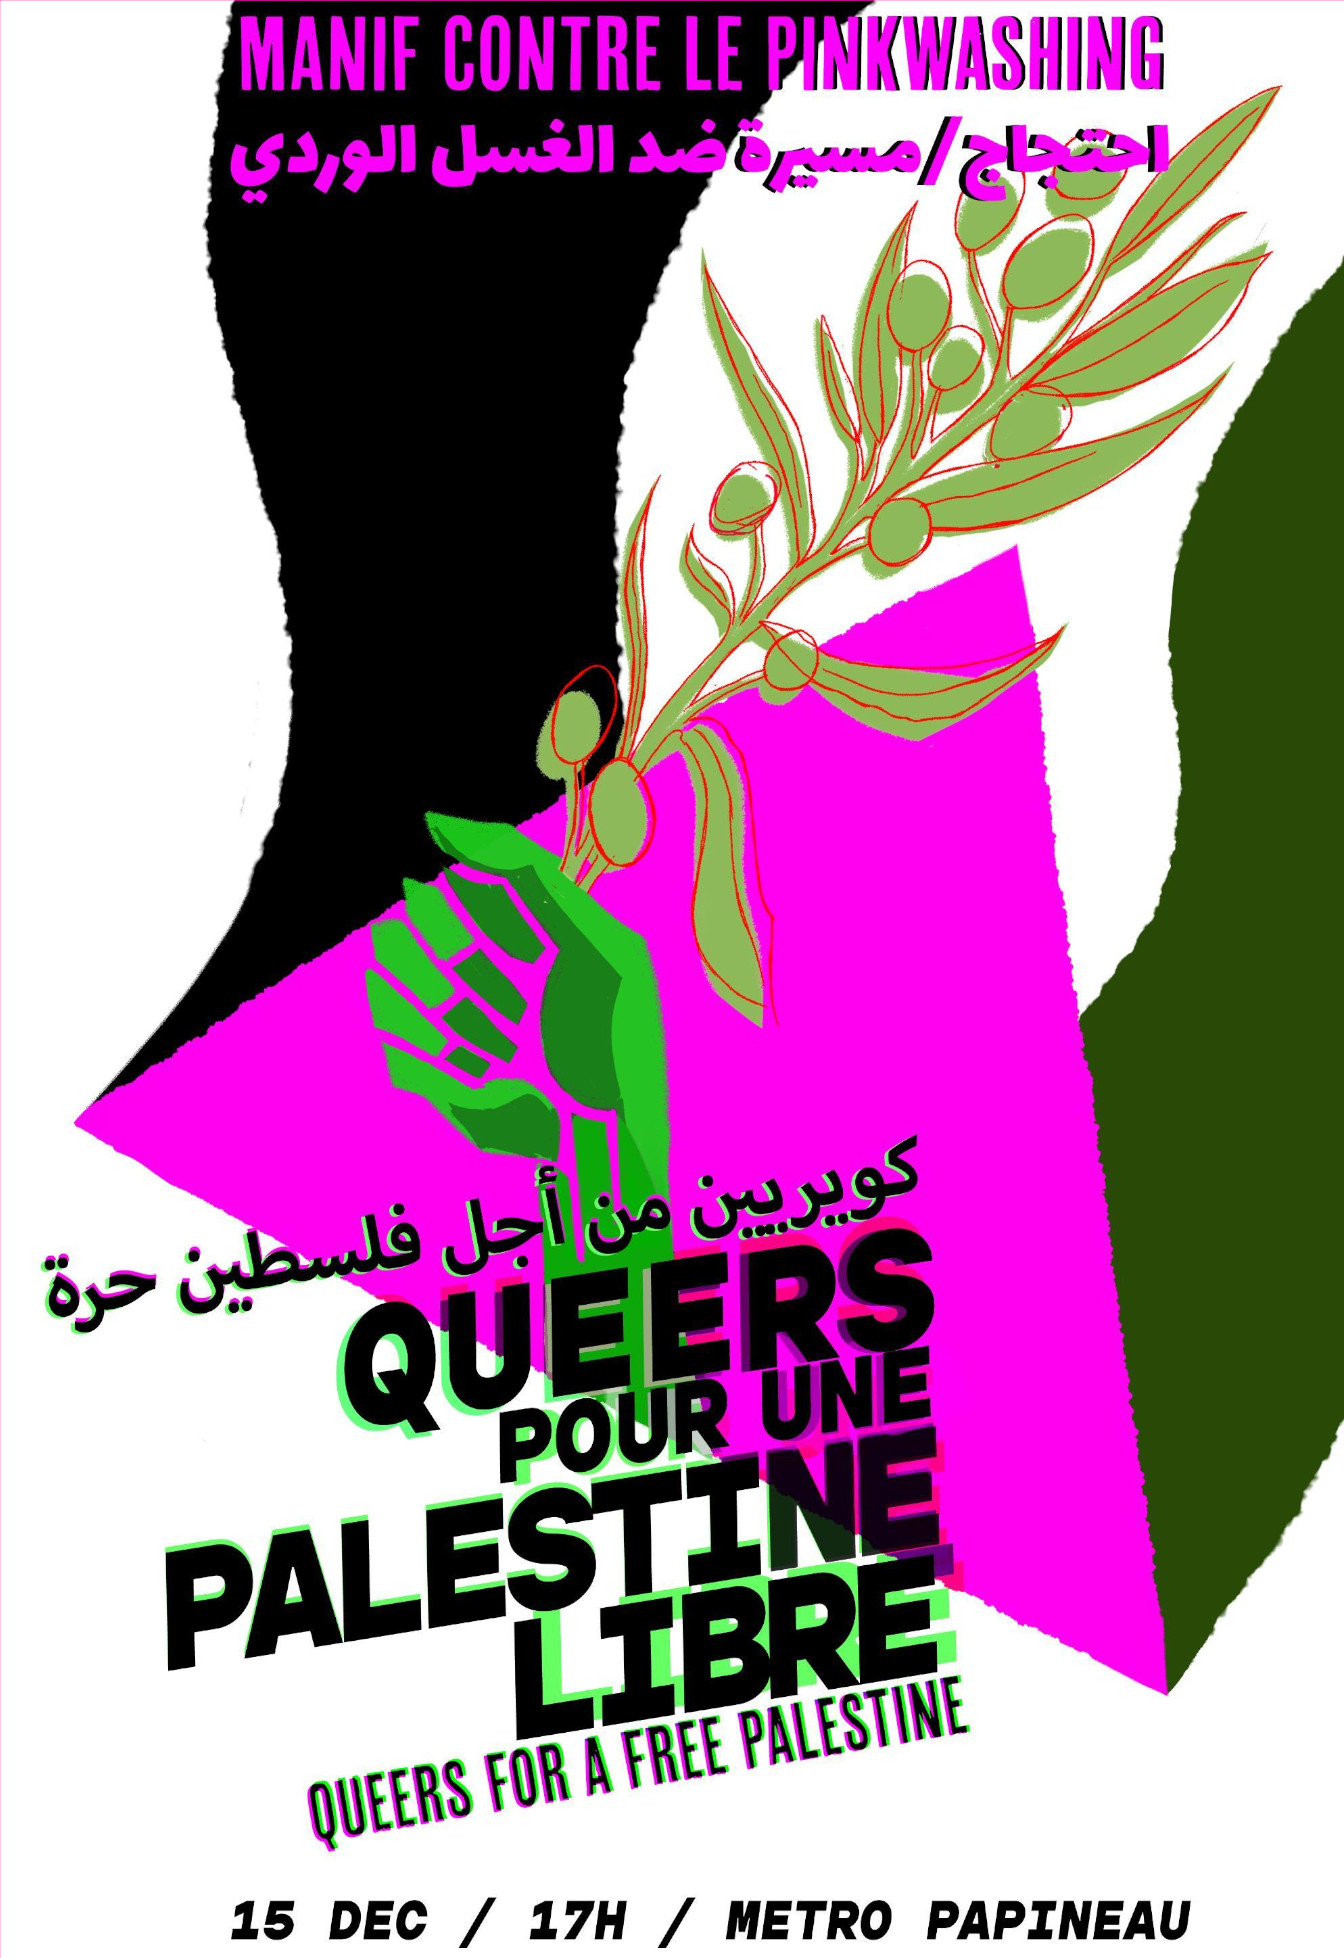 Affiche pour la manifestation, l'image représente un poing levé tenant une branche d'olivier avec un drapeau palestinien en background, il est écrit : Manif contre le pinkwashing Queers pour une Palestine libre Queers for a free Palestine 15 dec / 17h / Metro Papineau